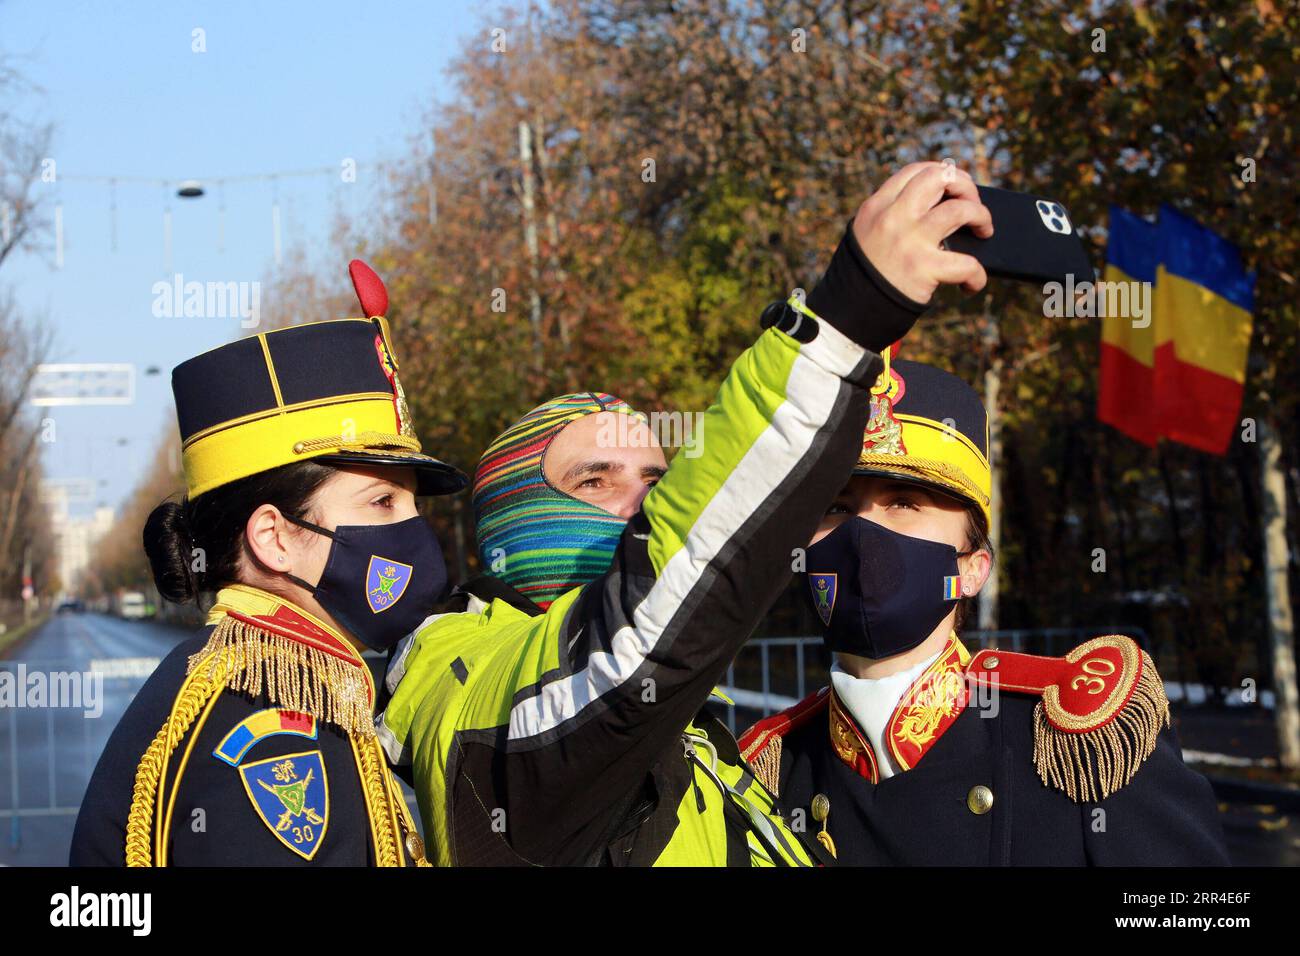 201201 -- BUKAREST, 1. Dezember 2020 -- Ein Fotograf nimmt ein Selfie mit zwei Soldatinnen der Gardistenbrigade bei der Feier zum Nationalfeiertag Rumäniens in Bukarest, Rumänien, 1. Dezember 2020. Rumänien hat in diesem Jahr eine vereinfachte Feierlichkeit zum Nationalfeiertag abgehalten, während der schweren Pandemie, ohne die großangelegte Militärparade und die Flugvorführungen der vergangenen Jahre. Foto von /Xinhua RUMÄNIEN-BUKAREST-NATIONALFEIERTAG GabrielxPetrescu PUBLICATIONxNOTxINxCHN Stockfoto